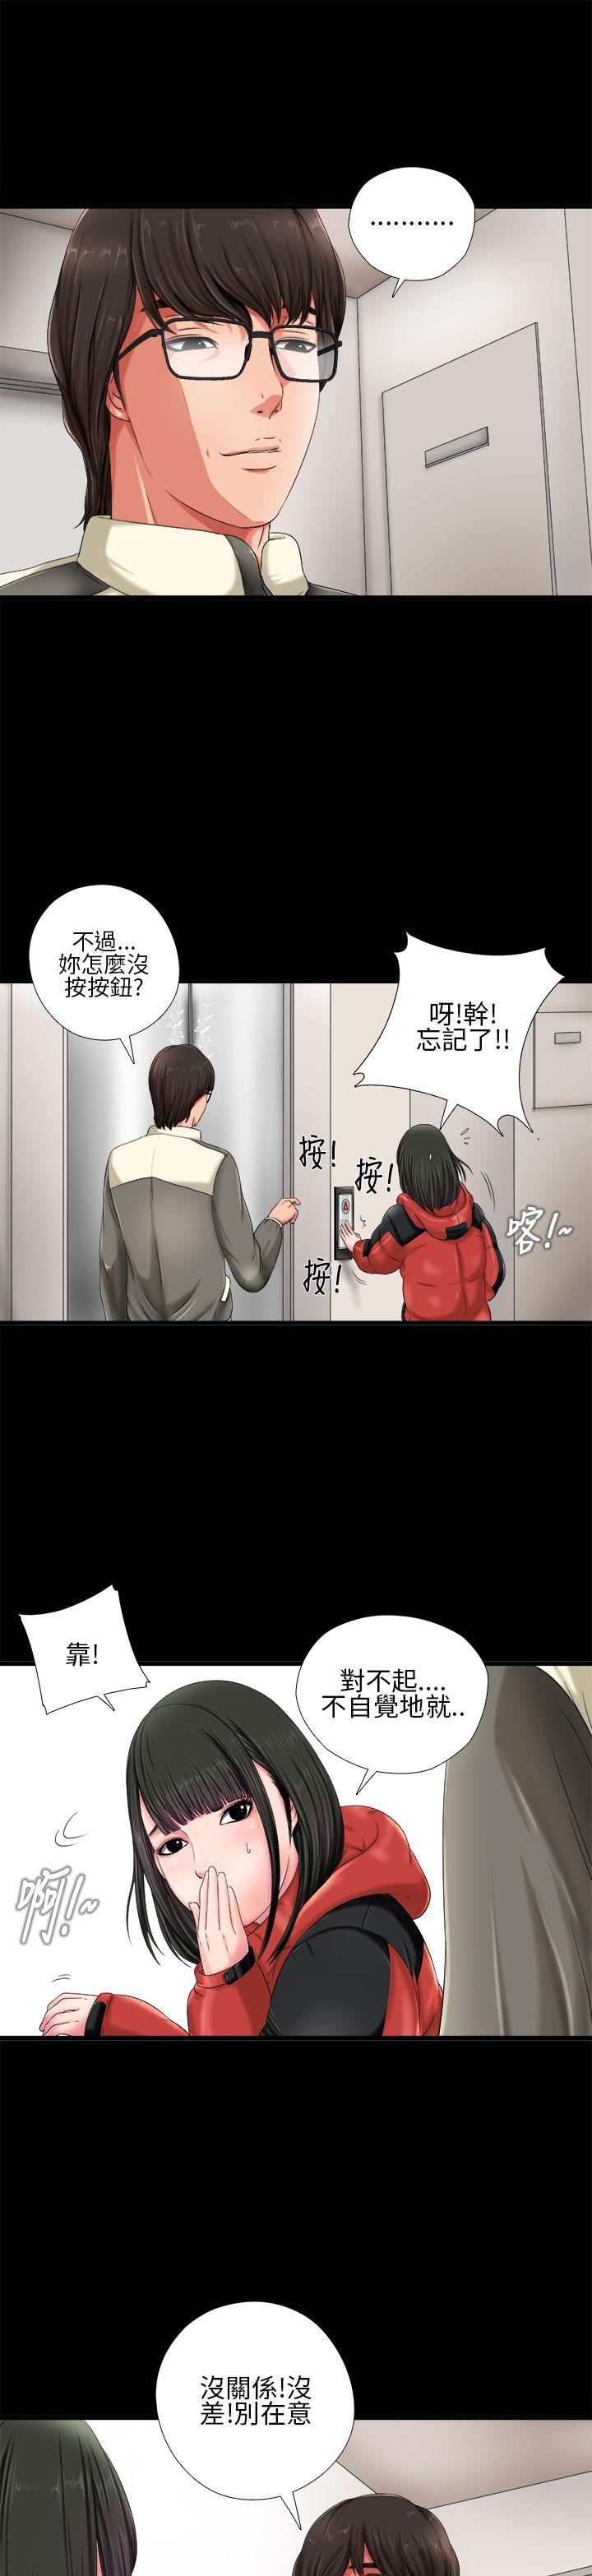 韩国污漫画 我的大叔 第1话 7